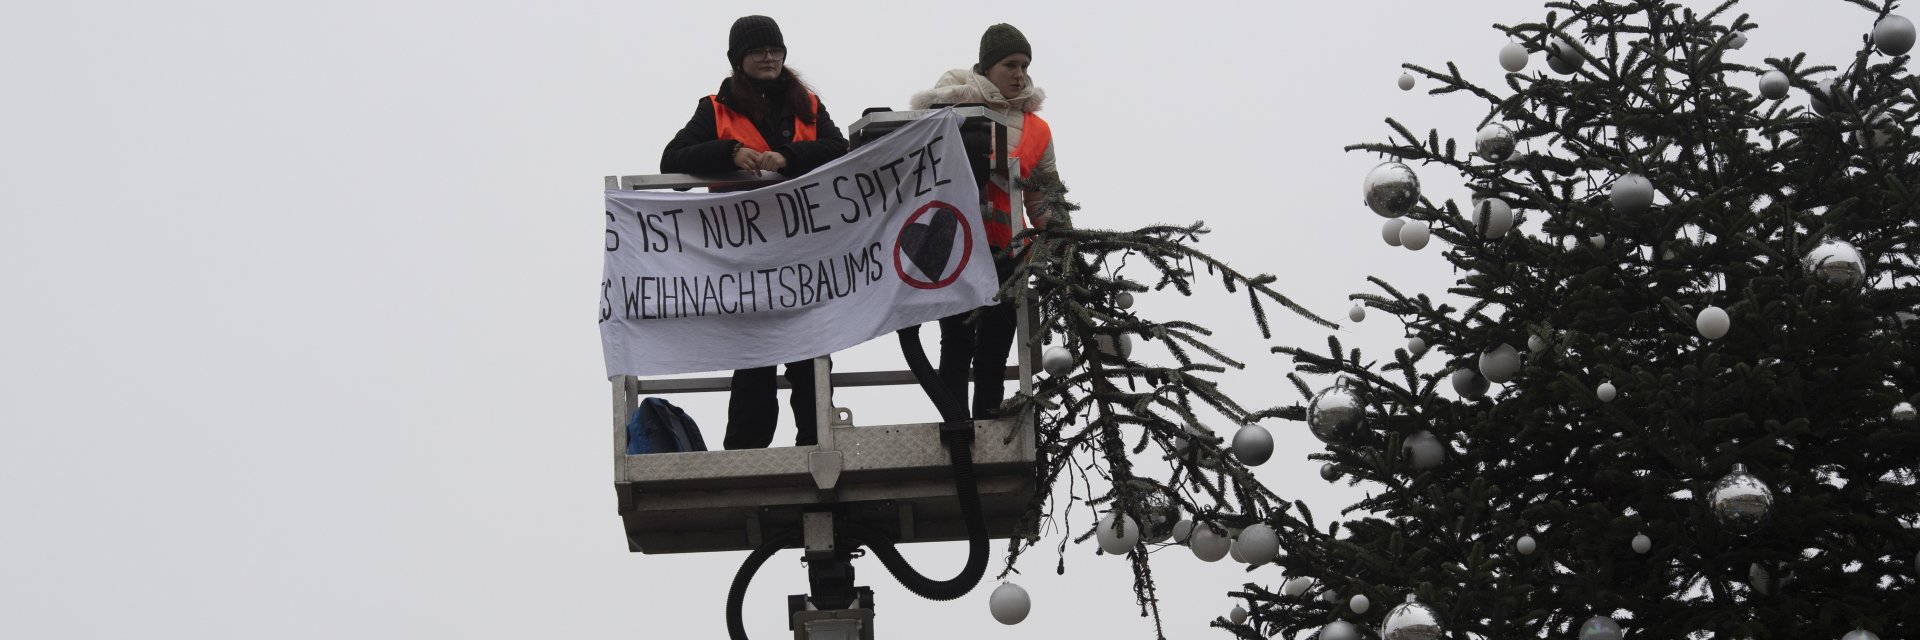 Екоактивисти отрязаха върха на коледното дърво пред Бранденбургската врата (снимки/видео)